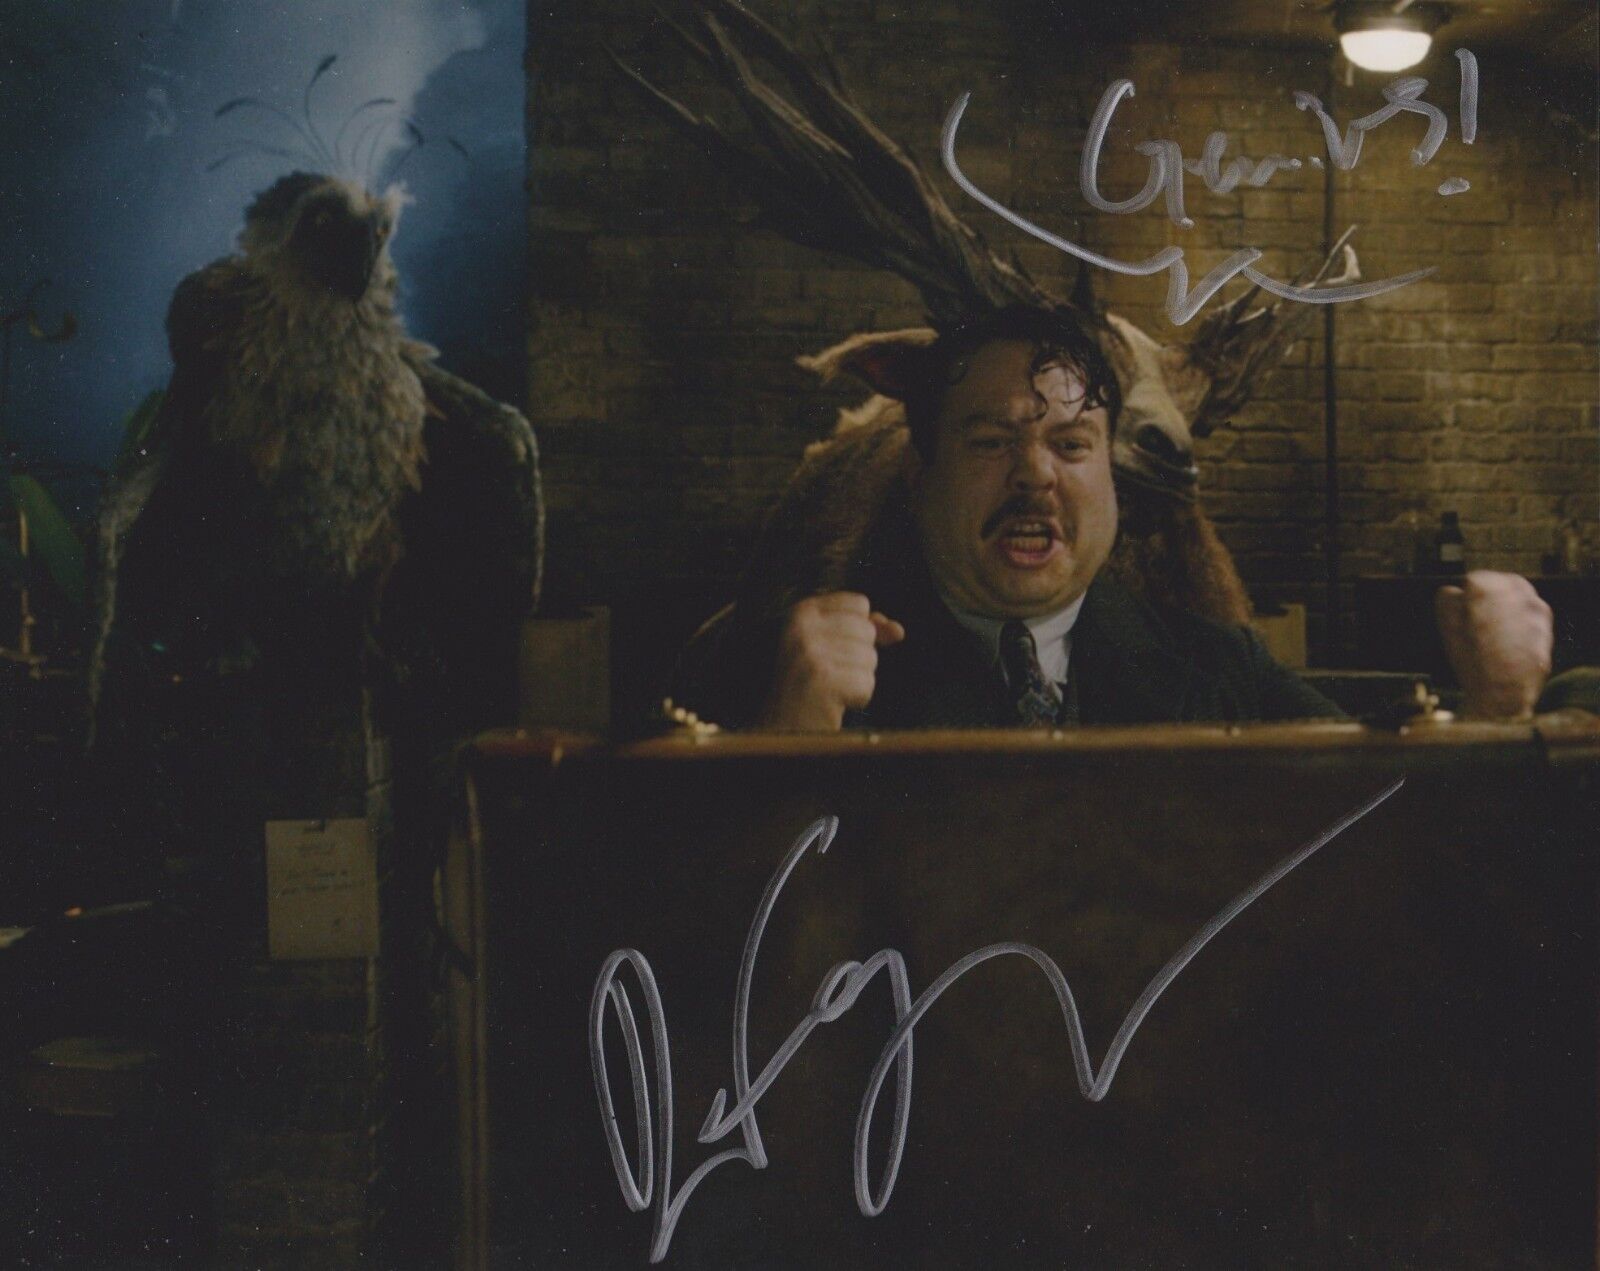 Dan Fogler Signed Fantastic Beasts: The Crimes Of Grindelwald 10x8 Photo Poster painting AFTAL